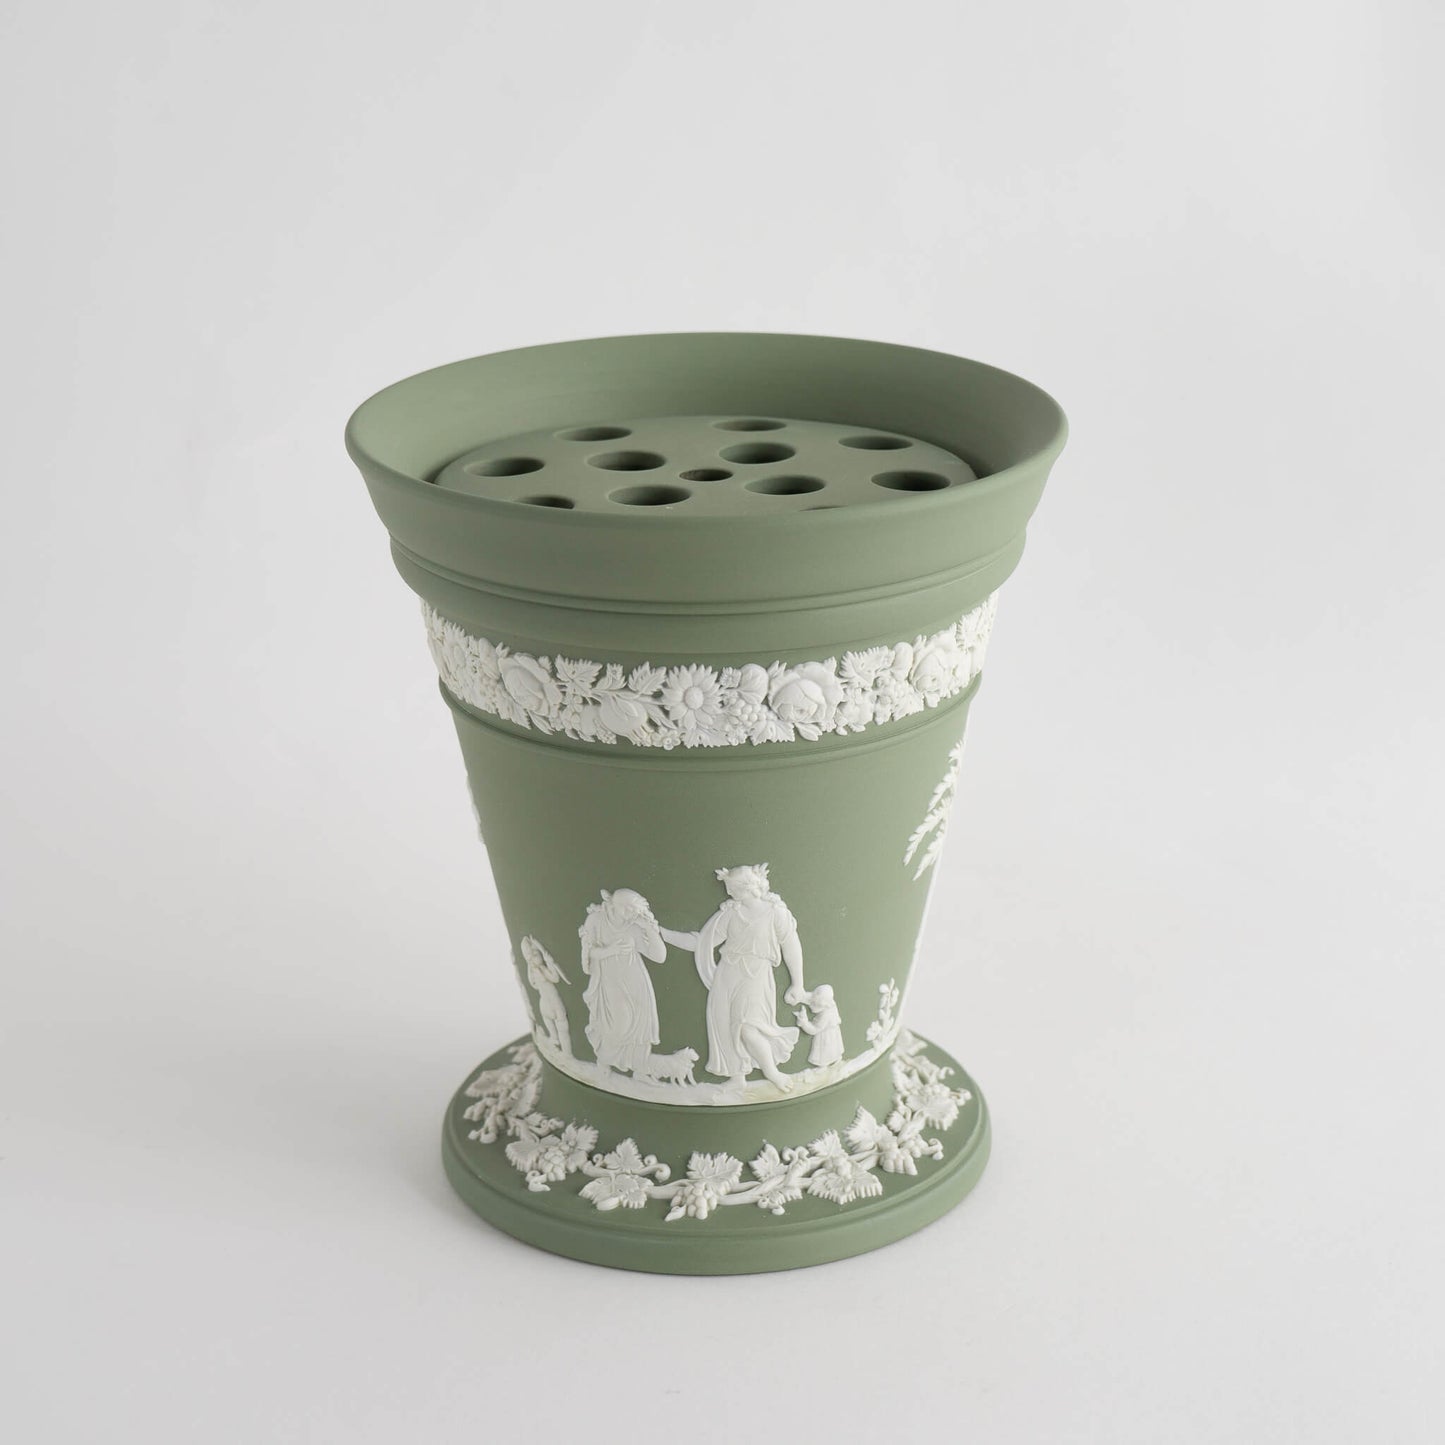 Classic Vintage Wedgwood Jasperware Vase in Sage Green